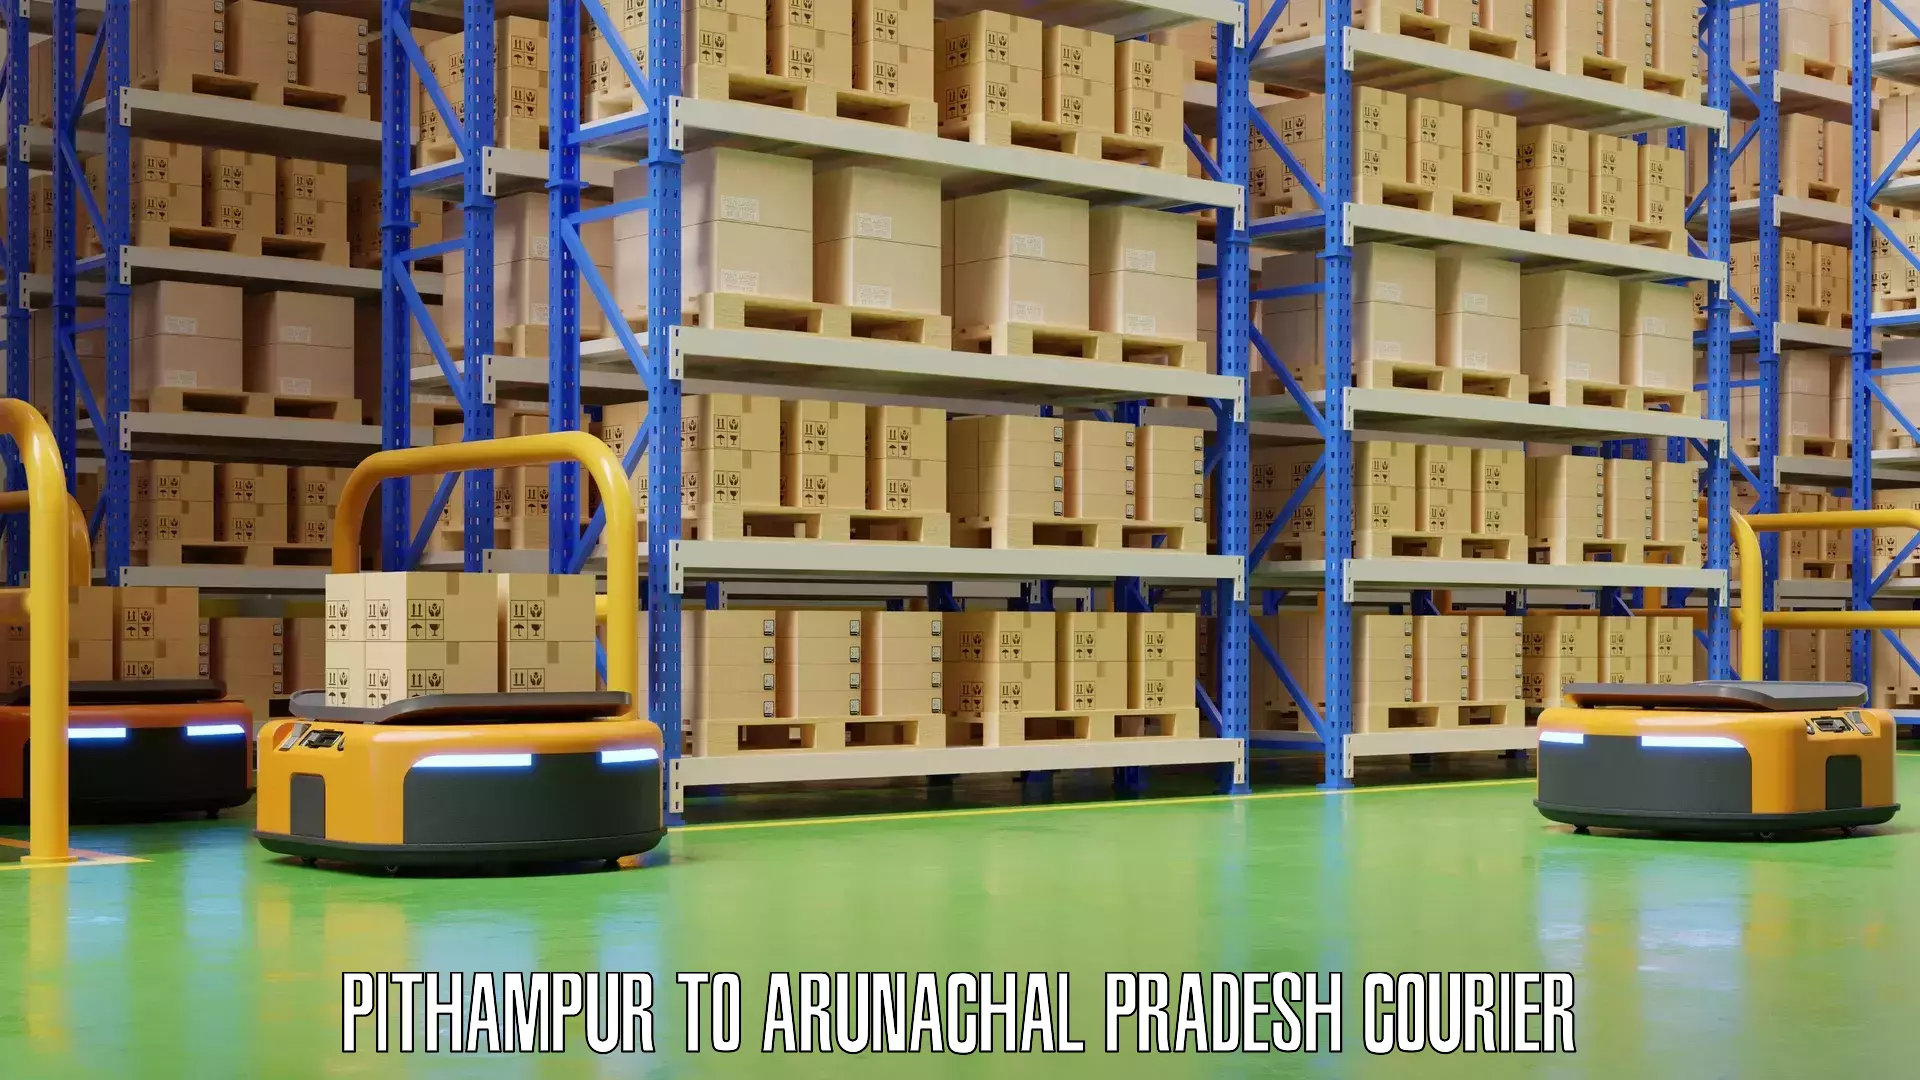 Baggage transport technology Pithampur to Arunachal Pradesh